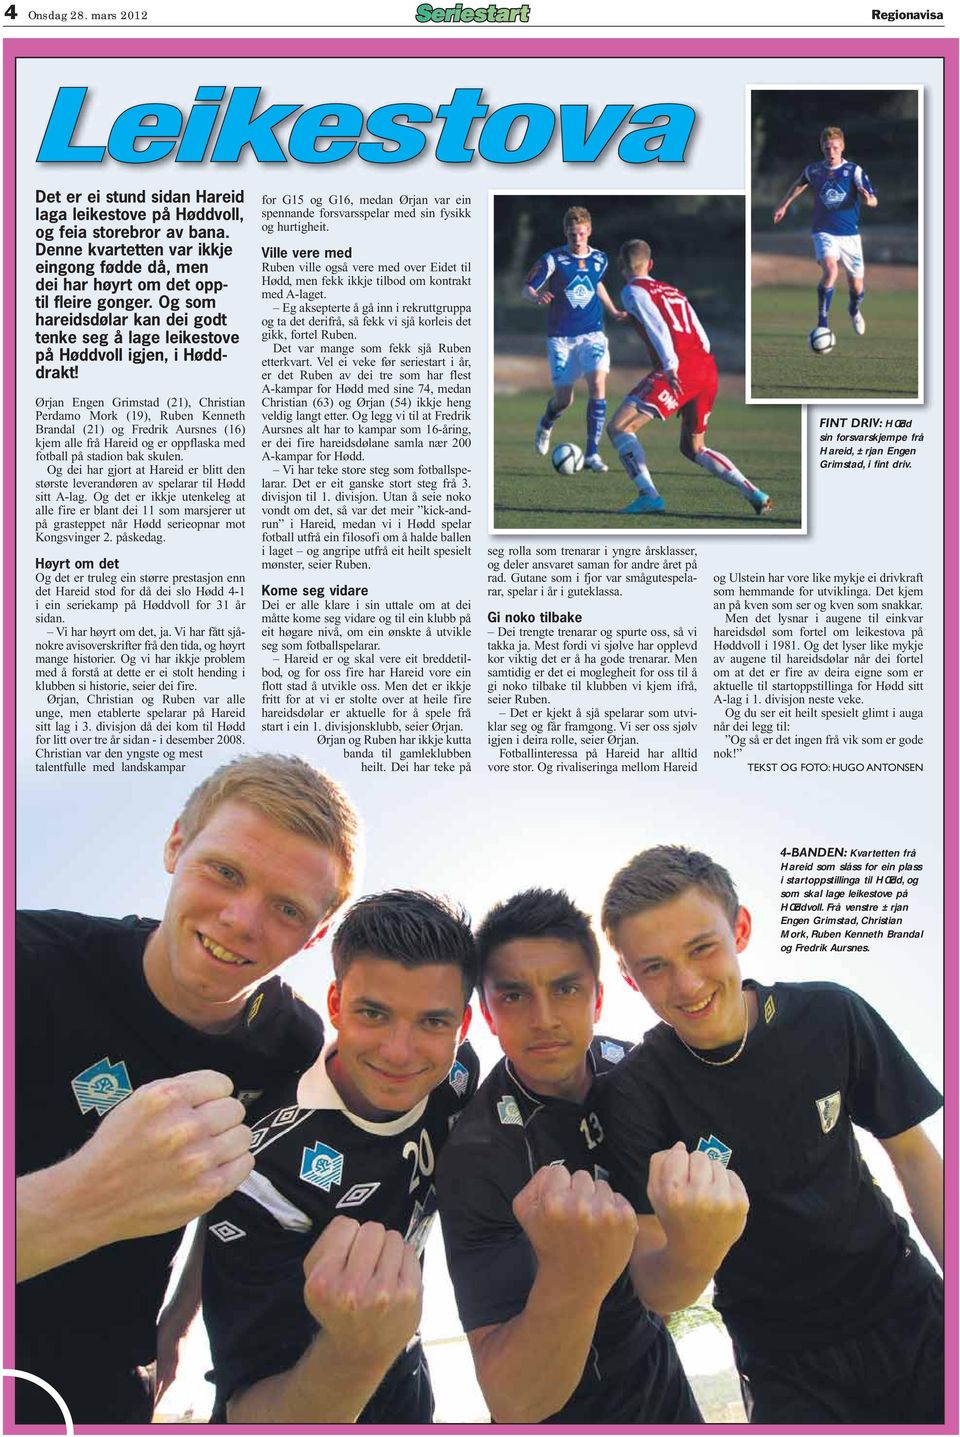 Ørjan Engen Grimstad (21), Christian Perdamo Mork (19), Ruben Kenneth Brandal (21) og Fredrik Aursnes (16) kjem alle frå Hareid og er oppflaska med fotball på stadion bak skulen.